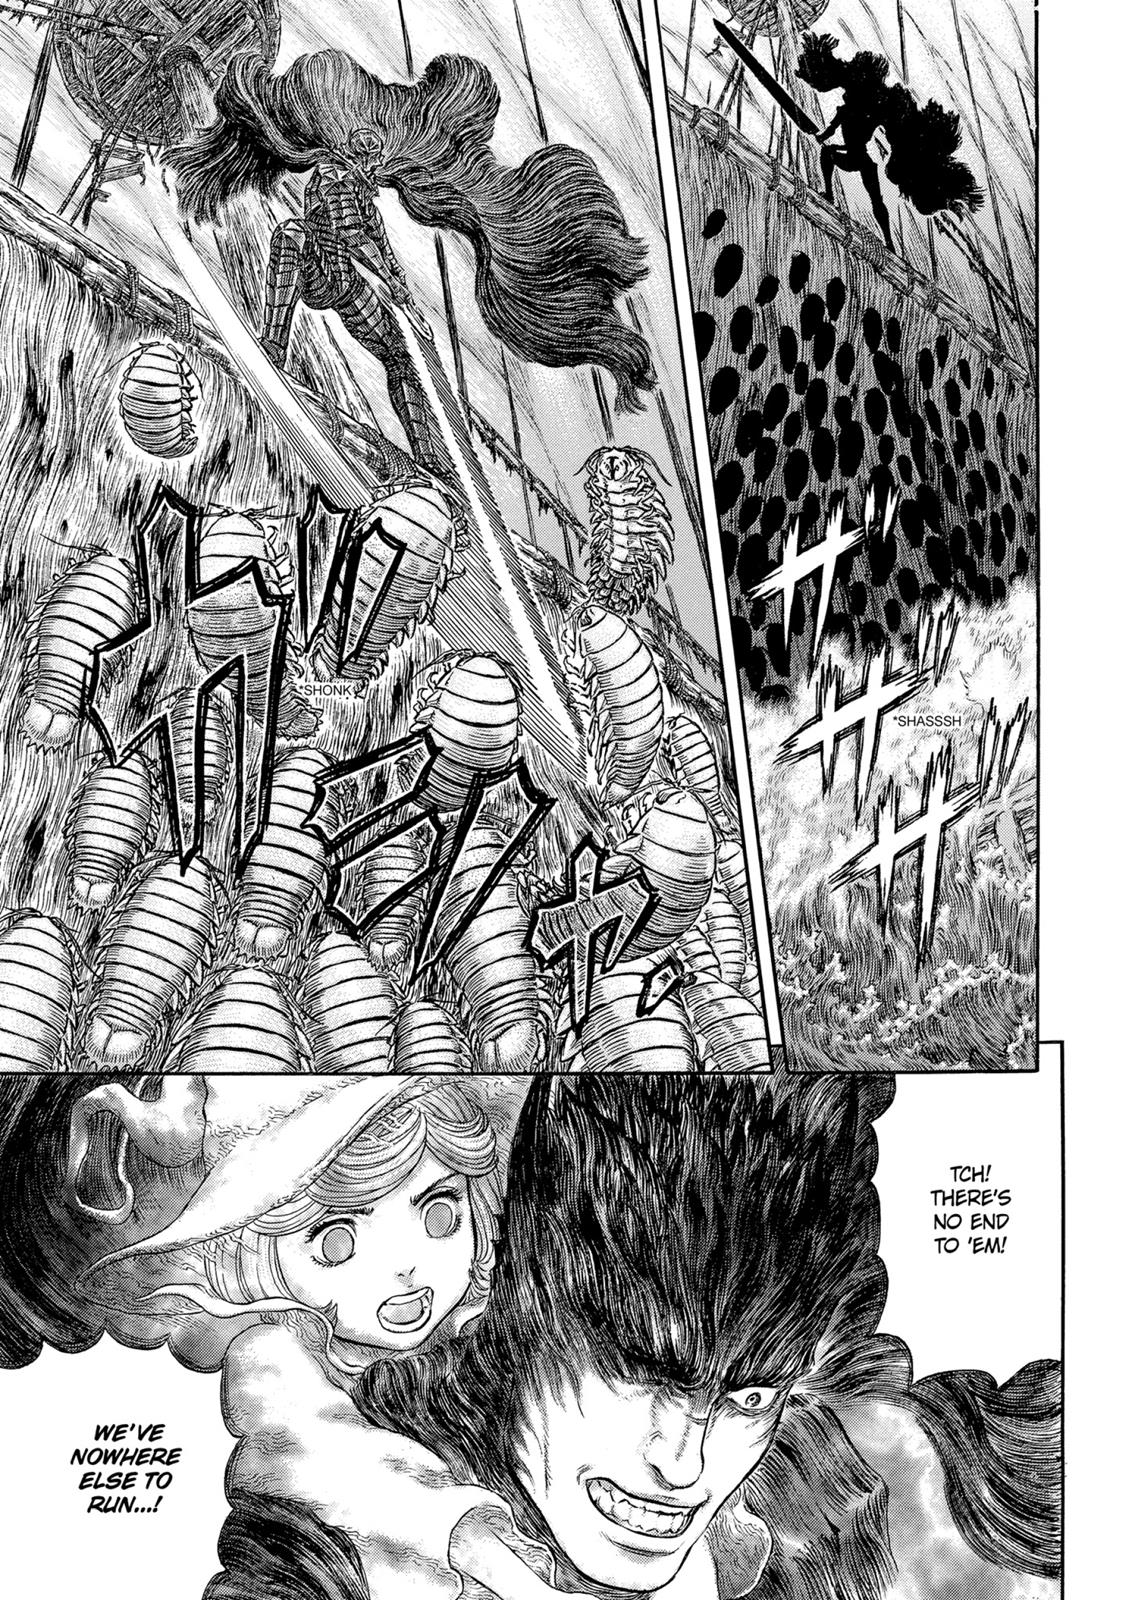 Berserk Manga Chapter 321 image 11